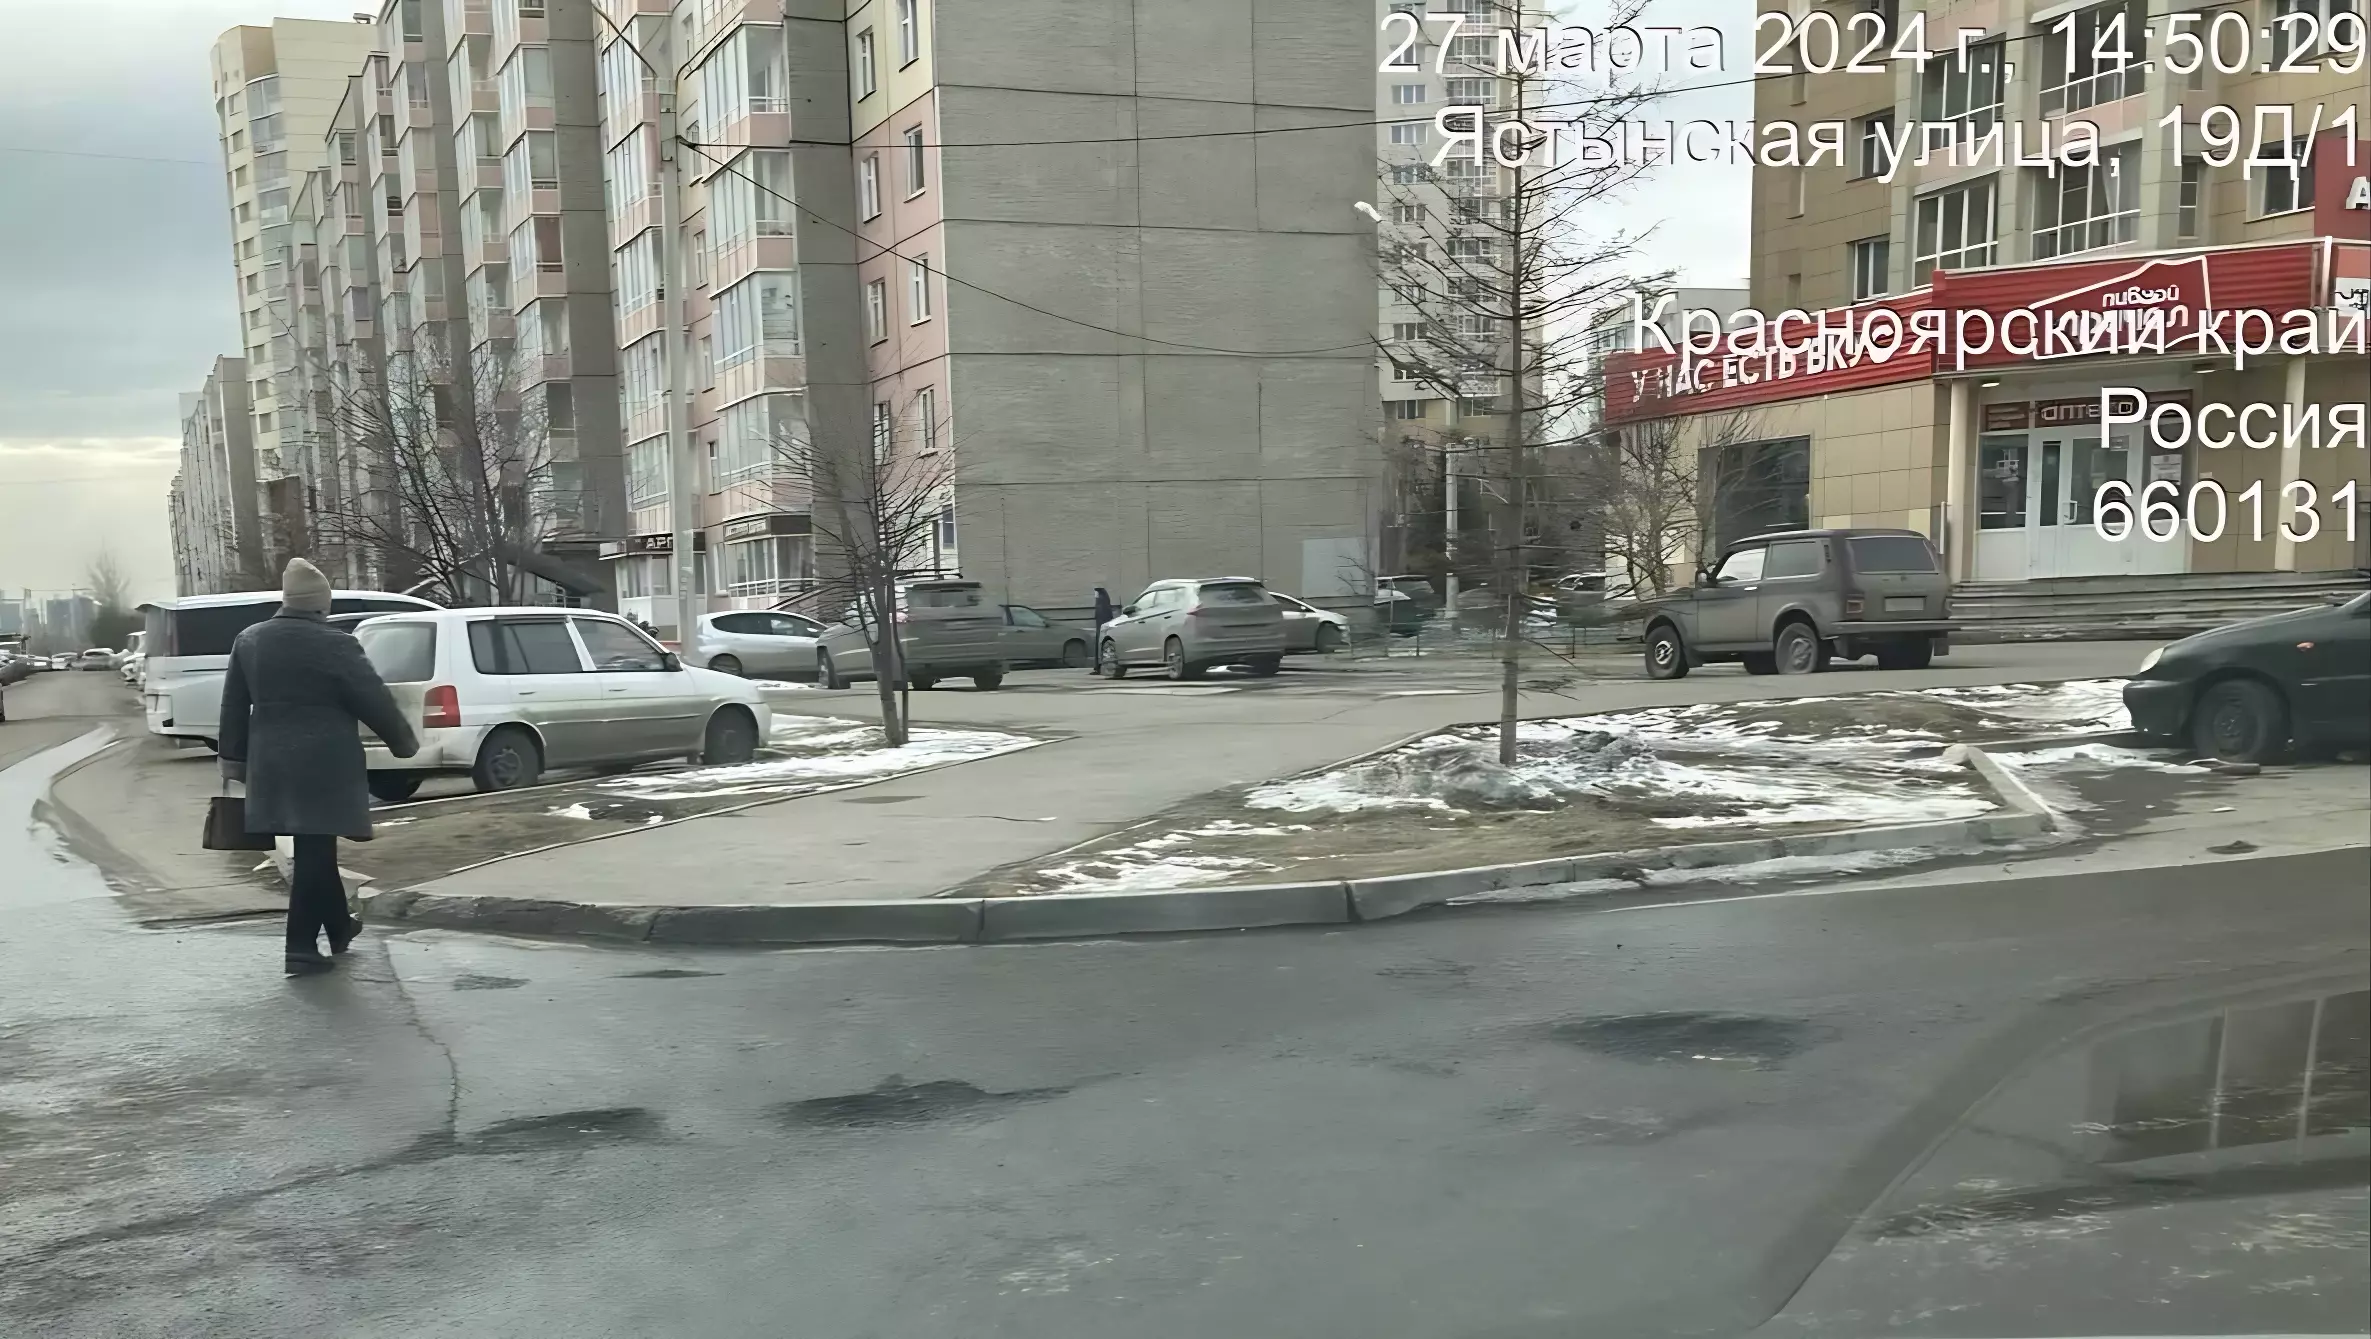 Прокуратура нашла ямы на 260 дорогах Красноярска и потребовала это исправить